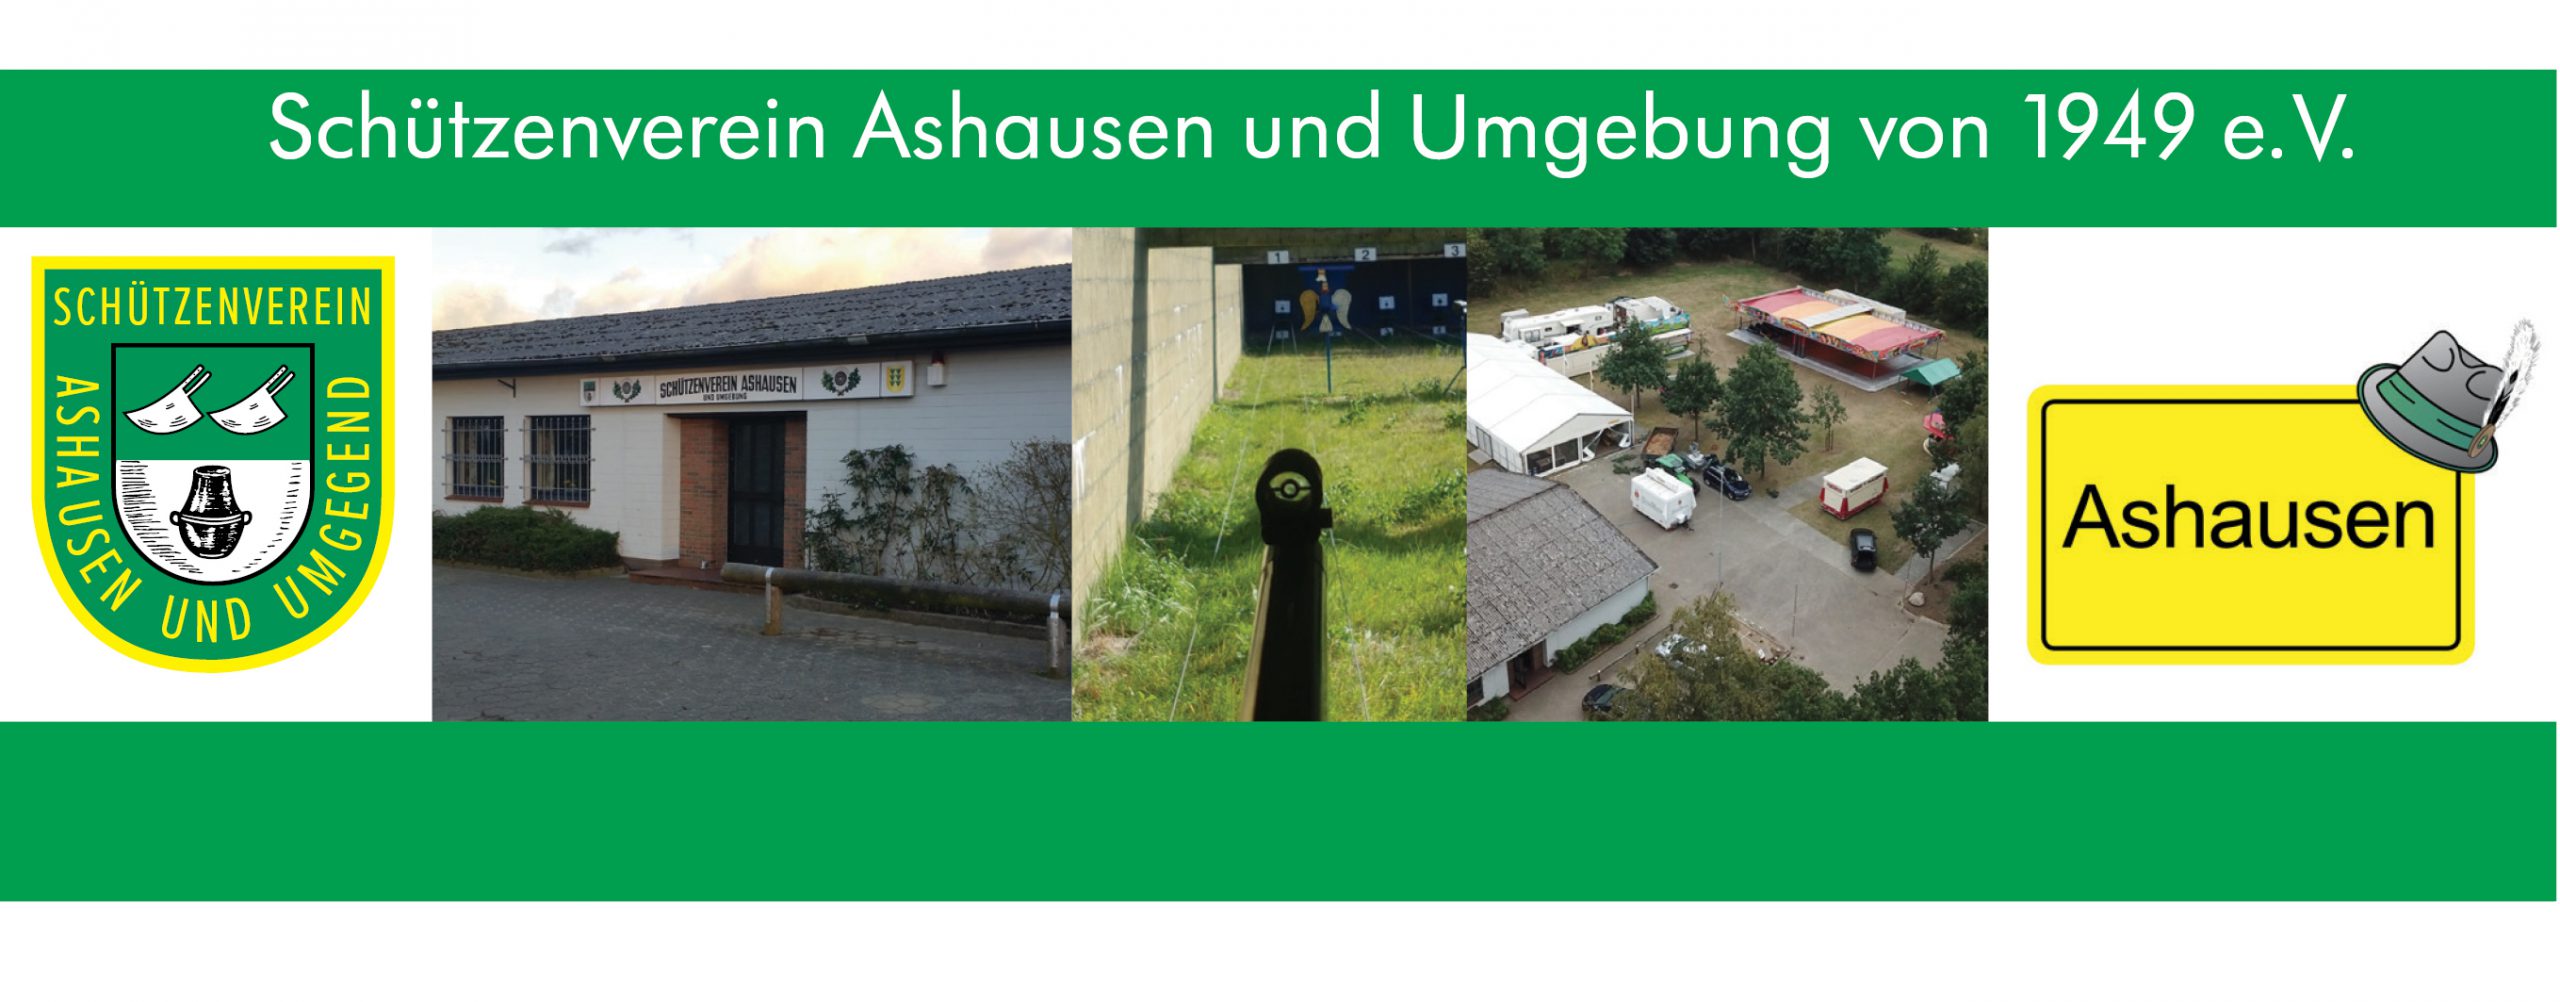 Schützenverein Ashausen und Umgebung e.V.